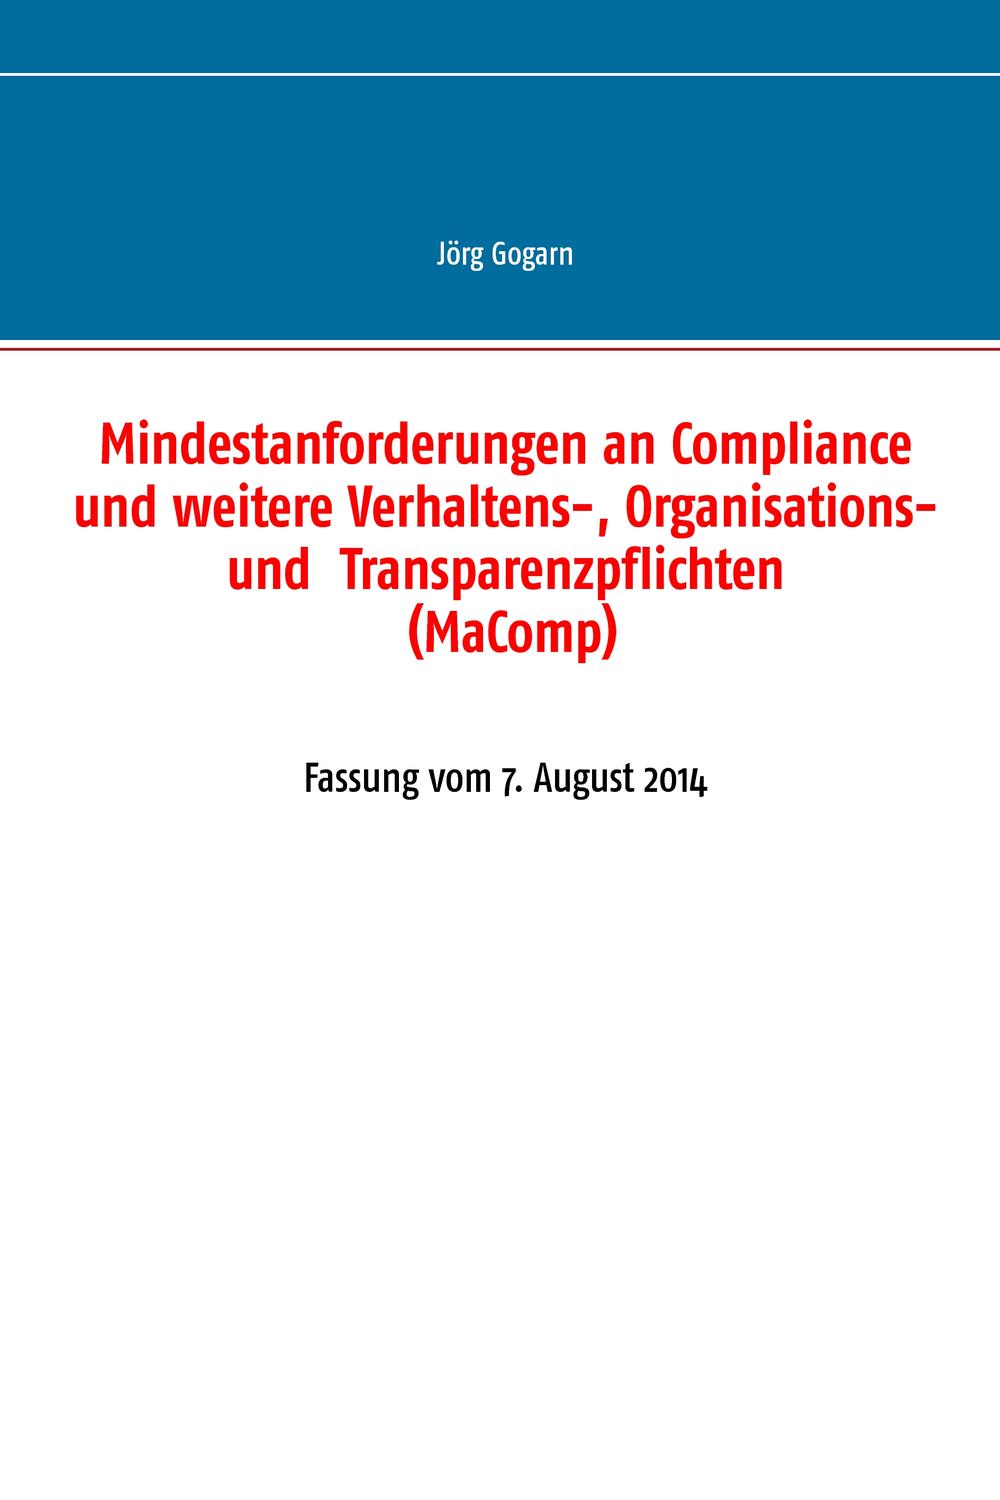 Mindestanforderungen an Compliance und weitere Verhaltens-, Organisations- und  Transparenzpflichten (MaComp) - Jörg Gogarn, JG BC Projekt & Service GmbH